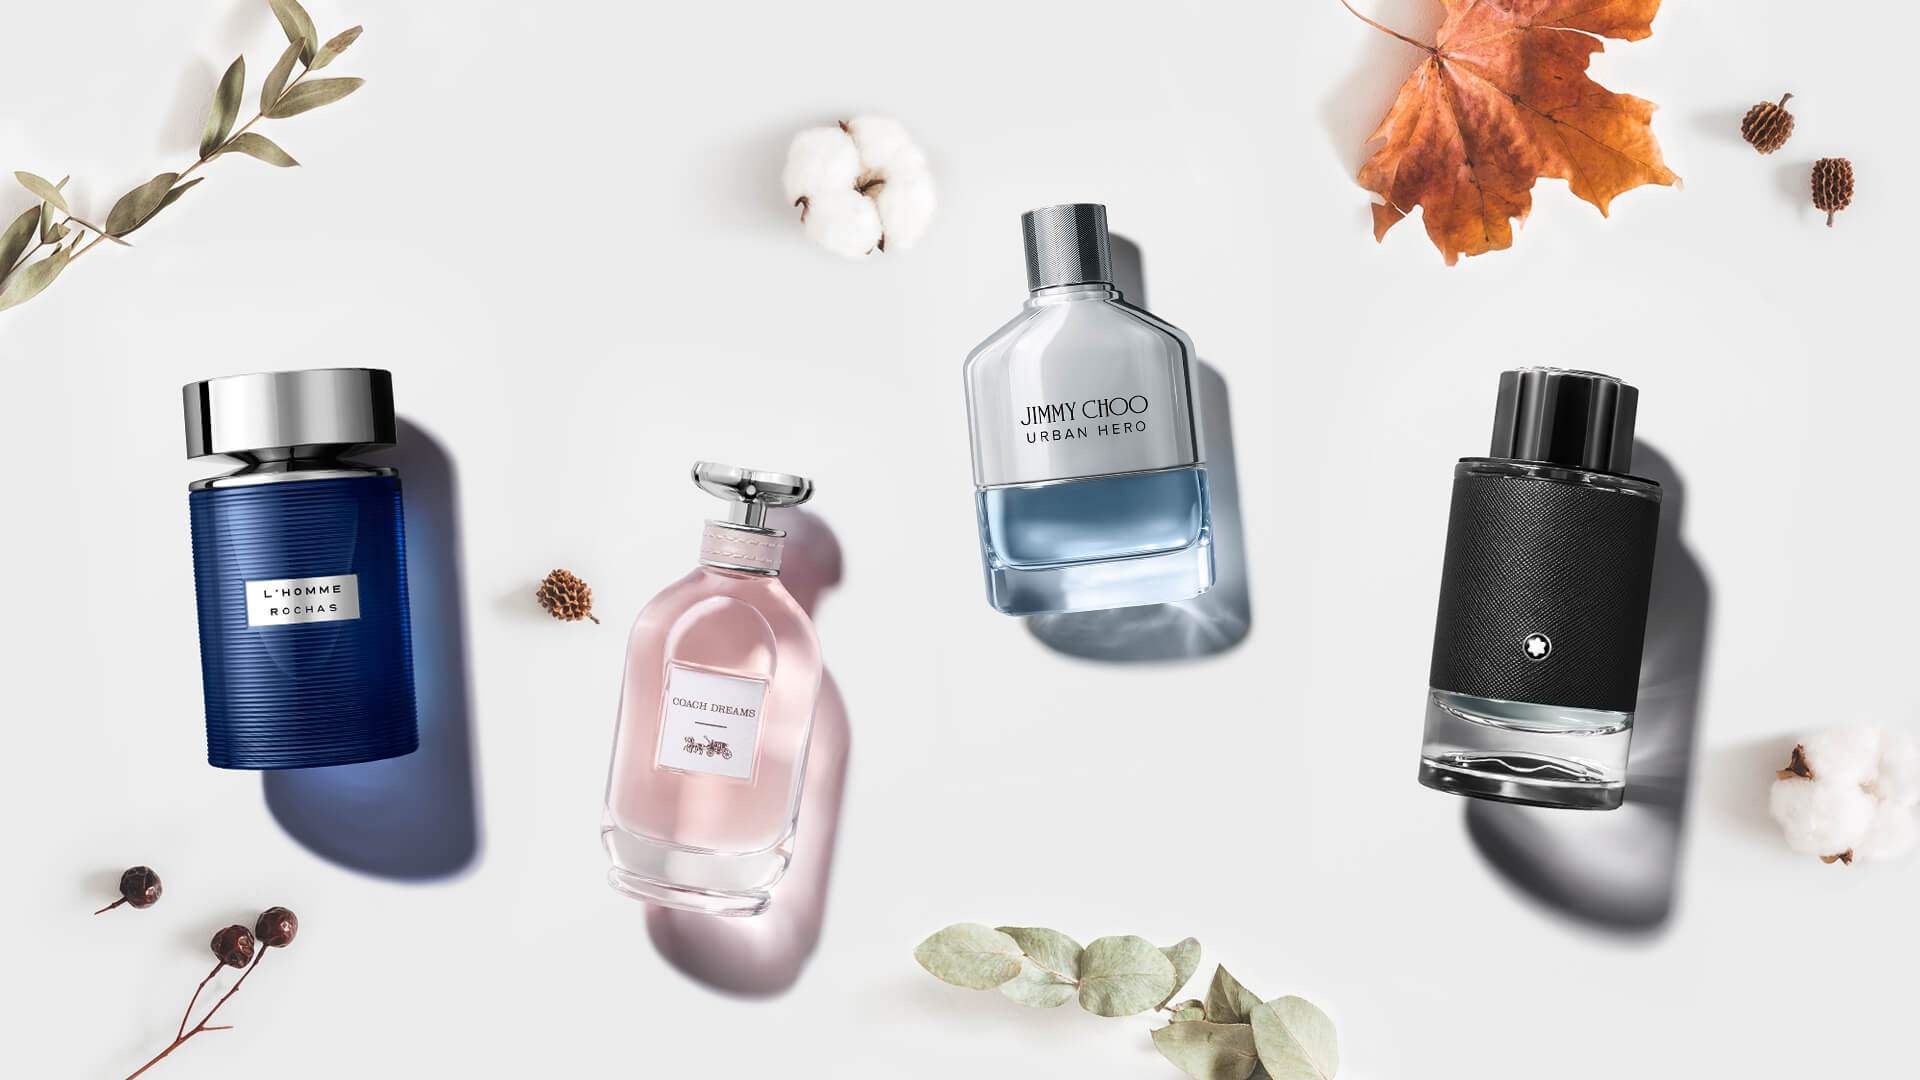 法国香水生产商 Inter Parfums 提高2022和2023年销售指导目标